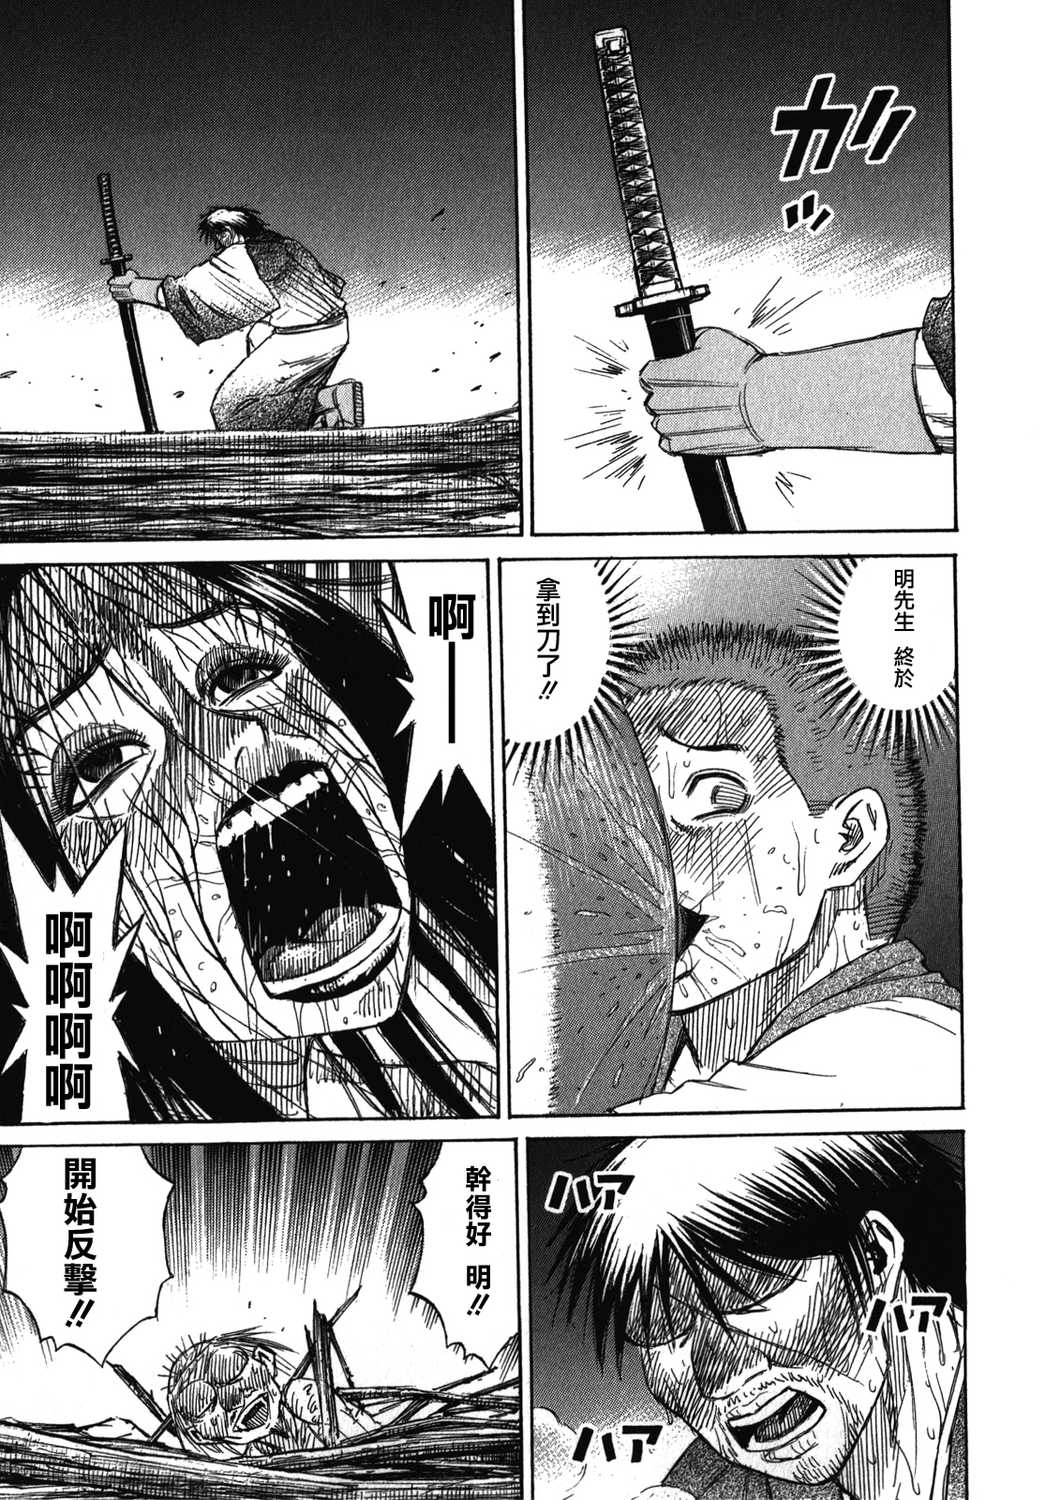 彼岸岛最后的47天漫画汉化版第108集 漫画db